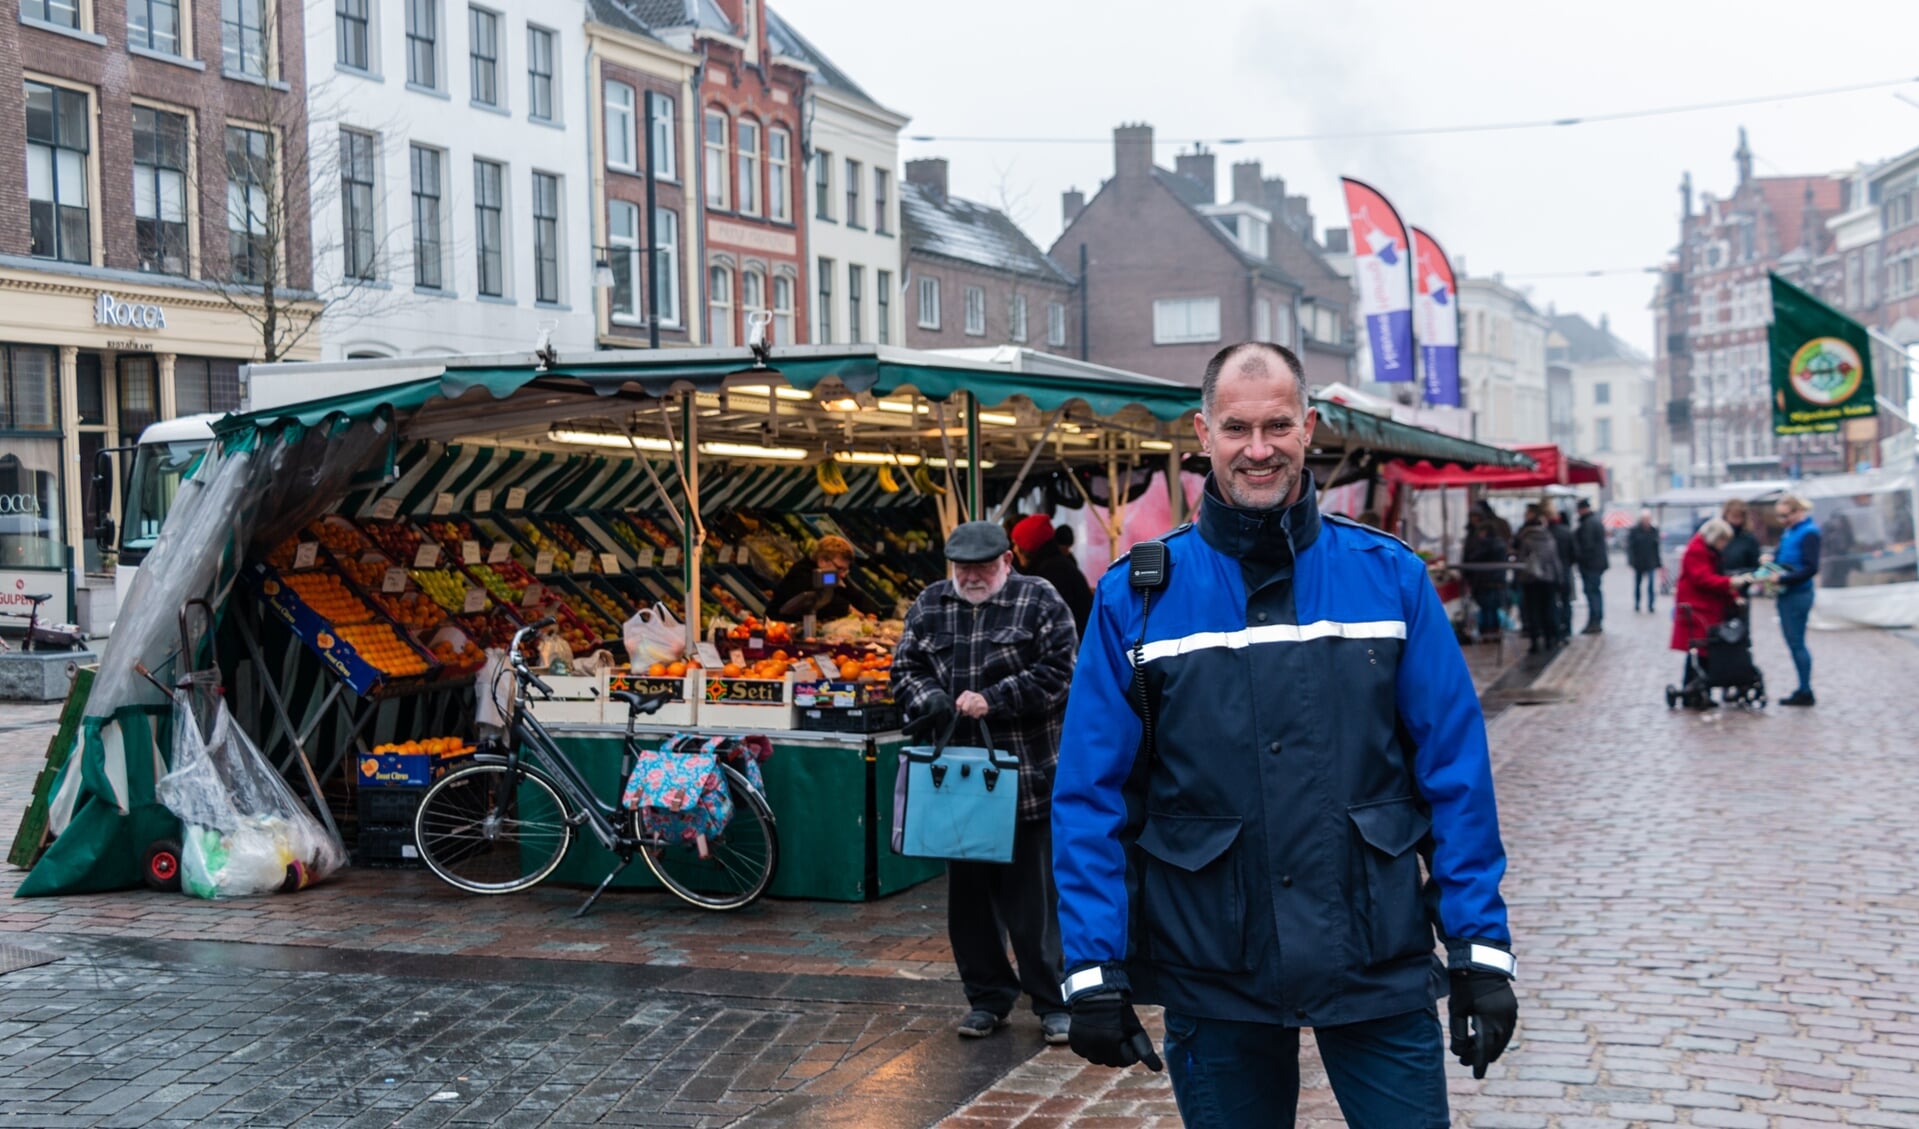 Marktmeester Theo Aalbers: ‘Je moet passie uitstralen om het leuk te houden. Zolang er markt is heb ik werk. In de toekomst zal het een slankere markt worden, maar toch bruisend, vol kwaliteit en diversiteit. Daar geloof ik in.’ Foto: Henk Derksen